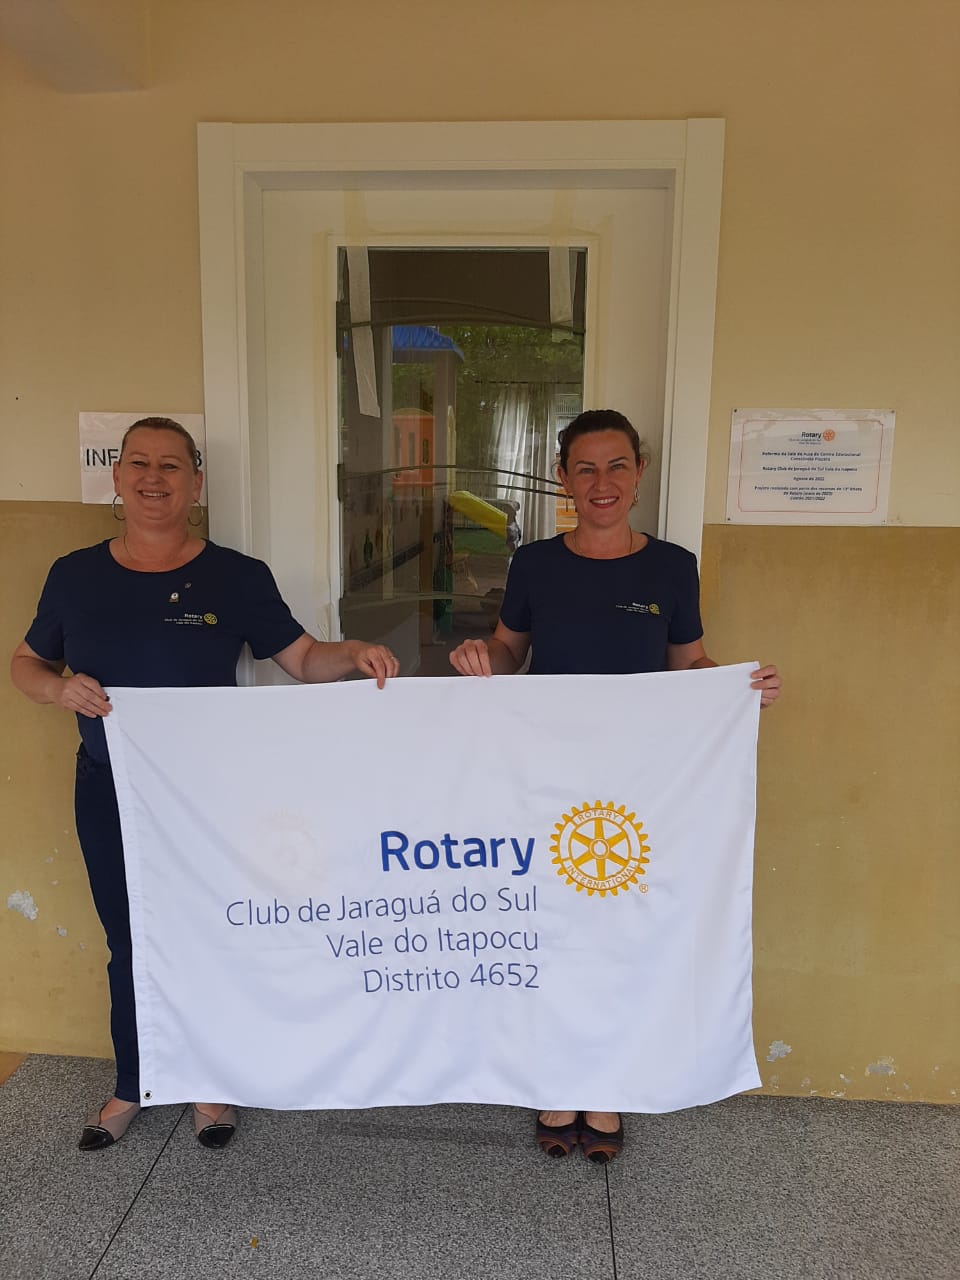 <strong>Rotary Club de Jaraguá do Sul Vale do Itapocu realiza evento de entrega da reforma de sala infantil</strong>